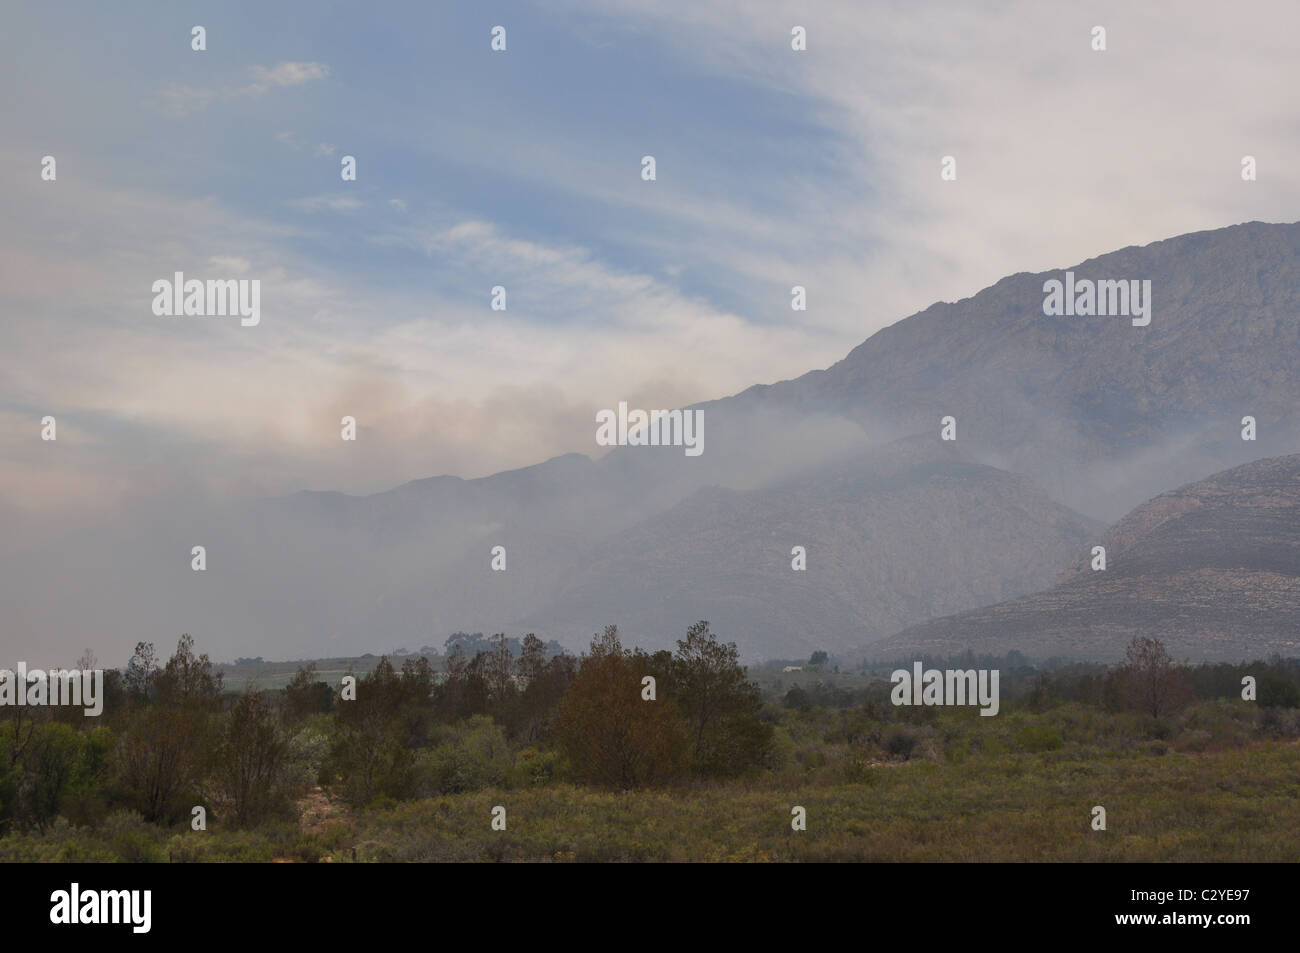 Heath fire, Bush fire, fumo, legno, montagna, incendio, Western Cape, Sud Africa Foto Stock